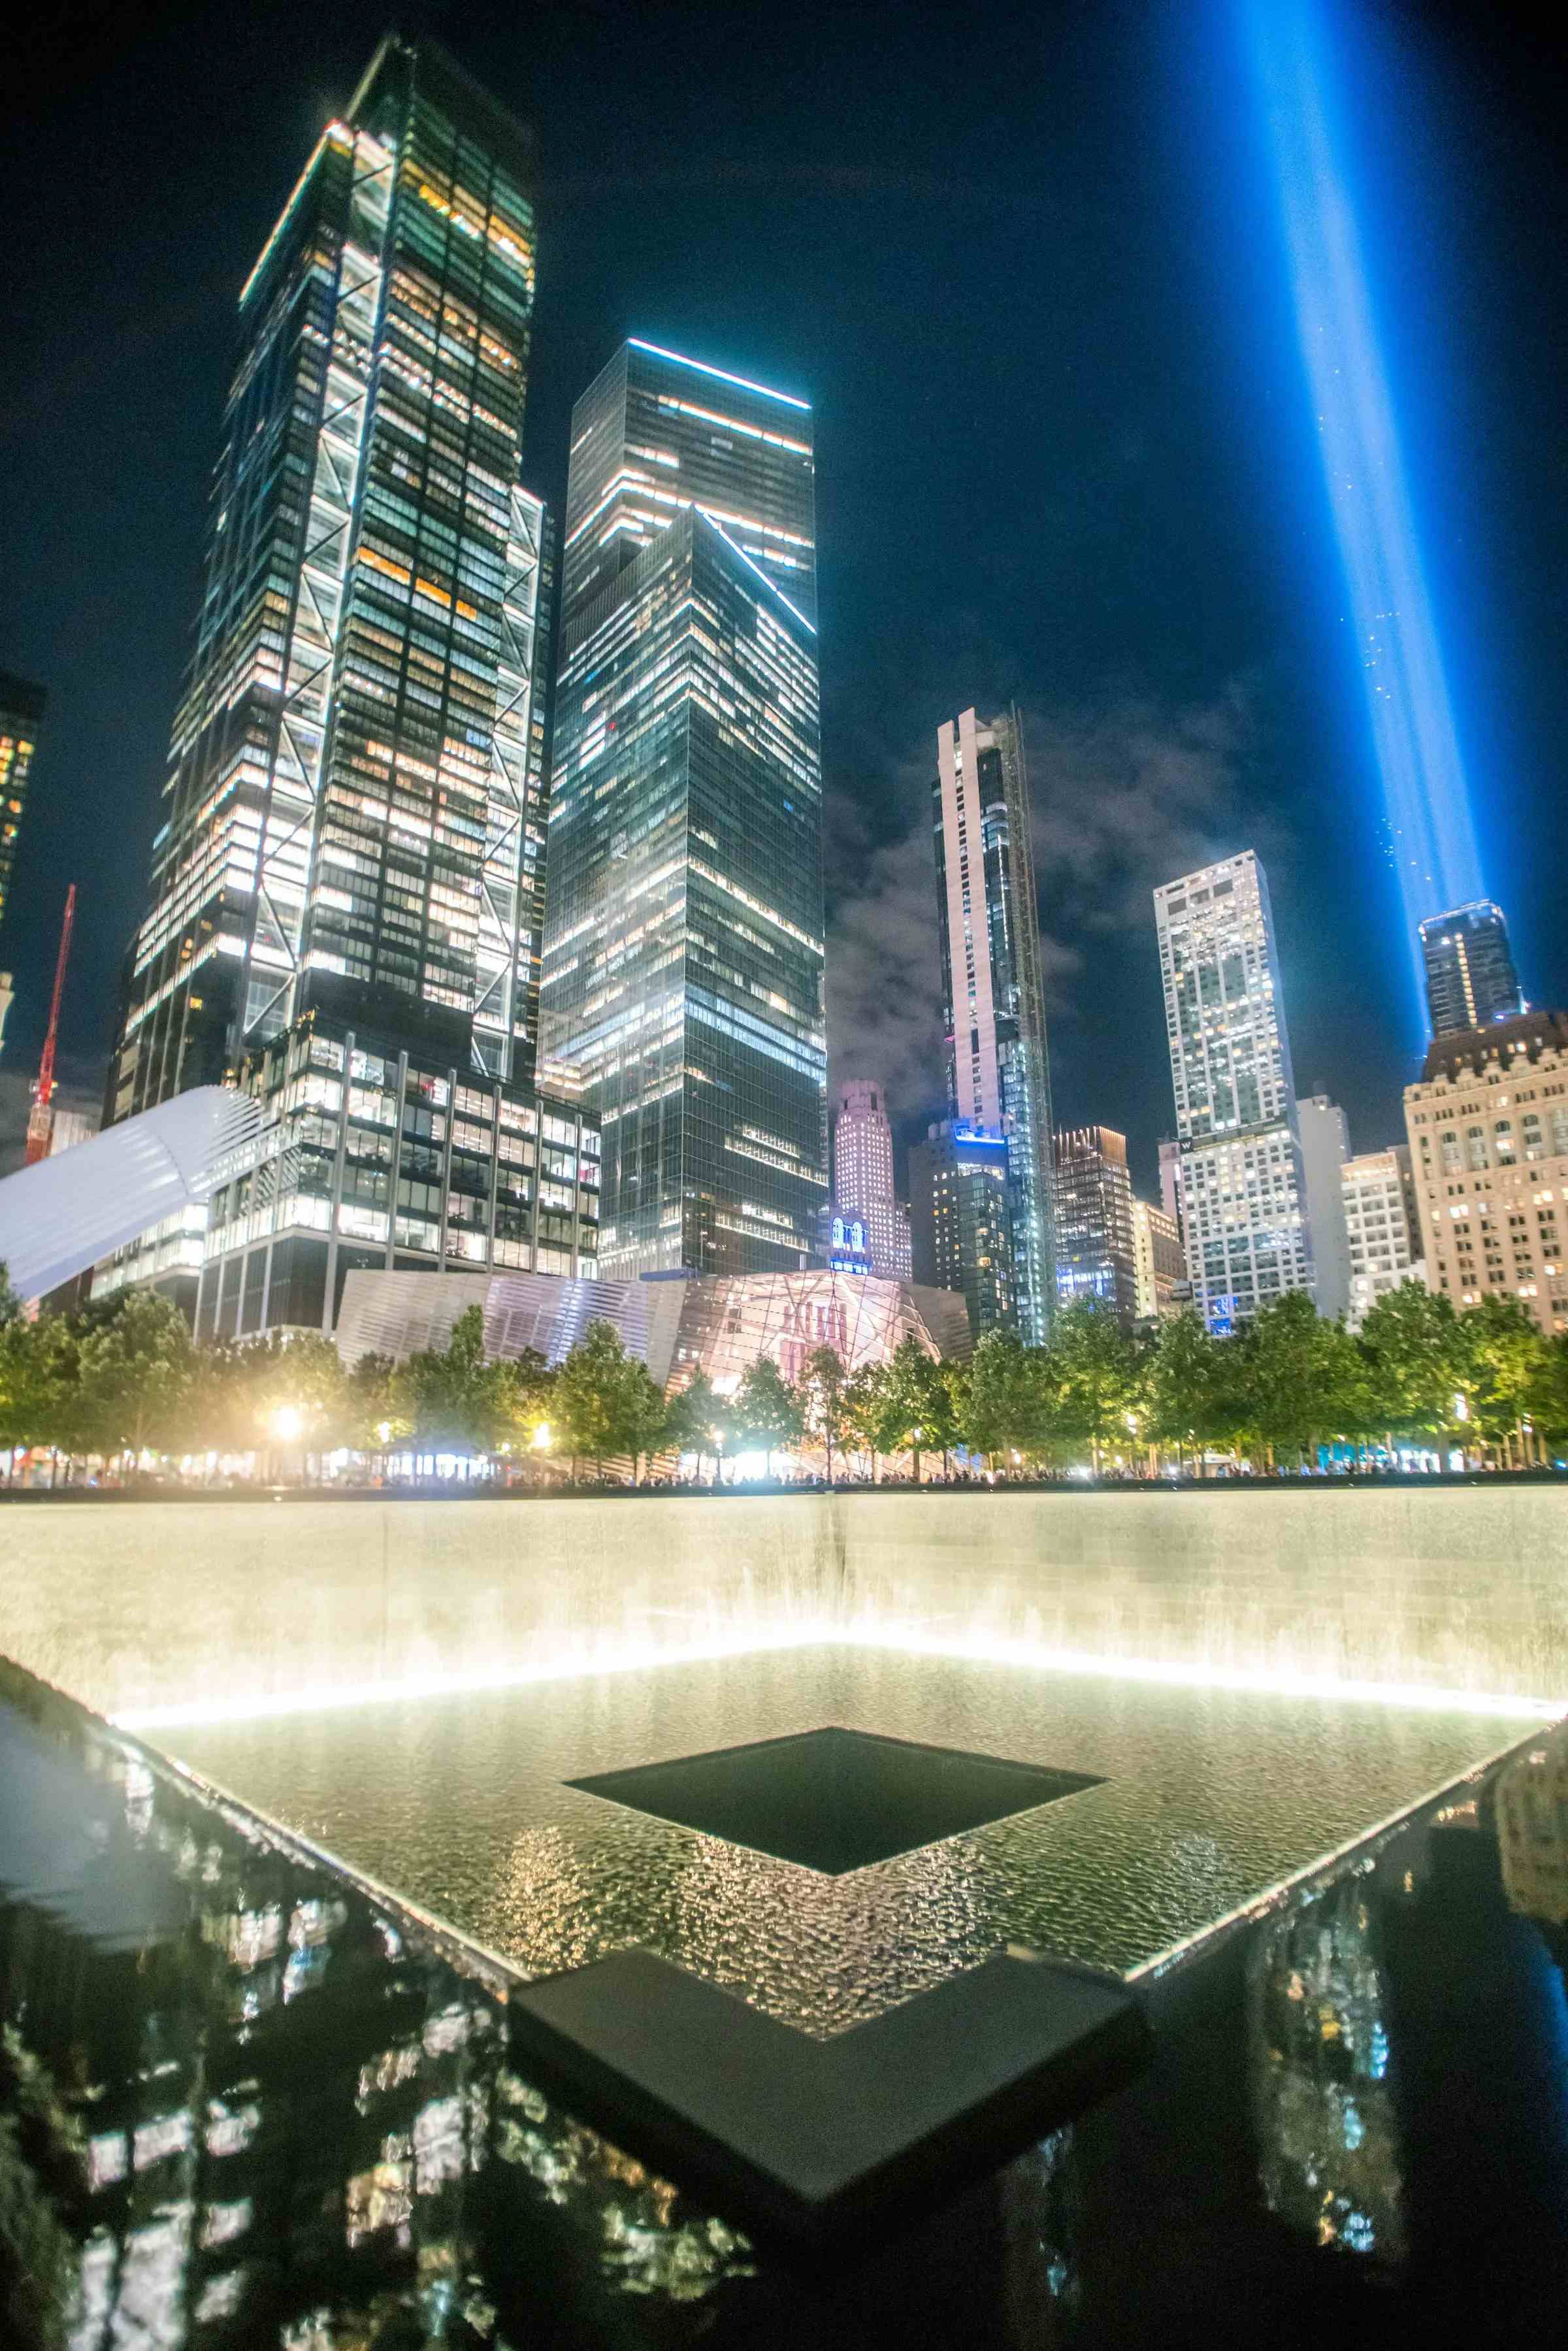 9/11 Memorial & Museum image